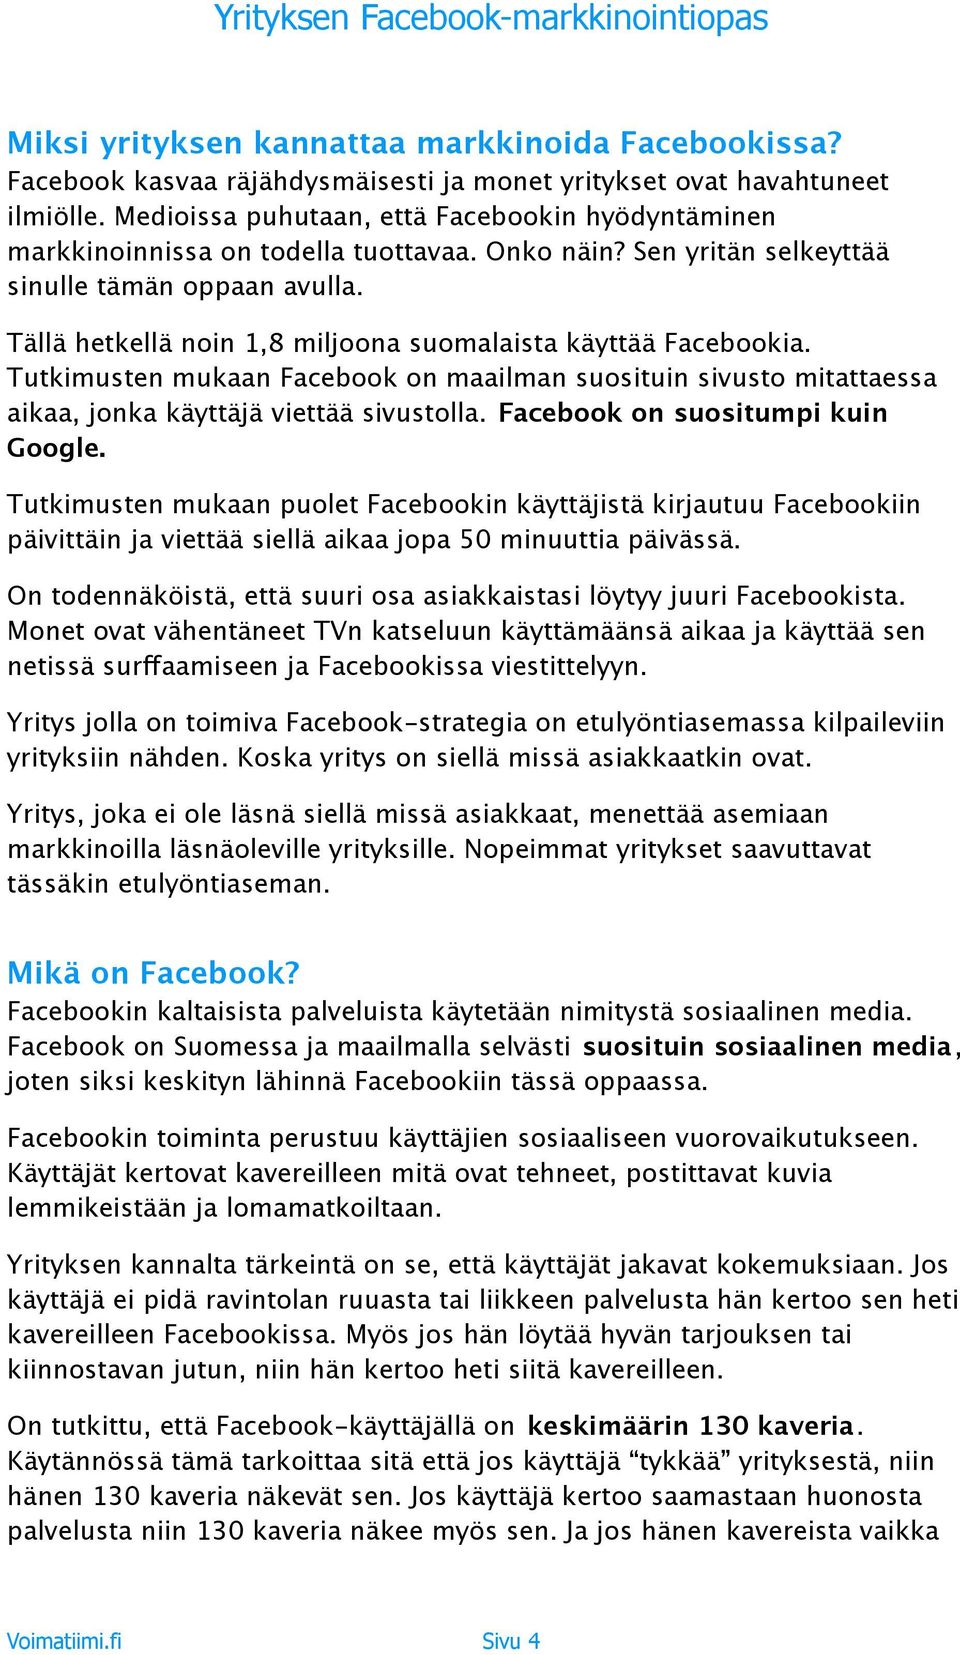 Tällä hetkellä noin 1,8 miljoona suomalaista käyttää Facebookia. Tutkimusten mukaan Facebook on maailman suosituin sivusto mitattaessa aikaa, jonka käyttäjä viettää sivustolla.